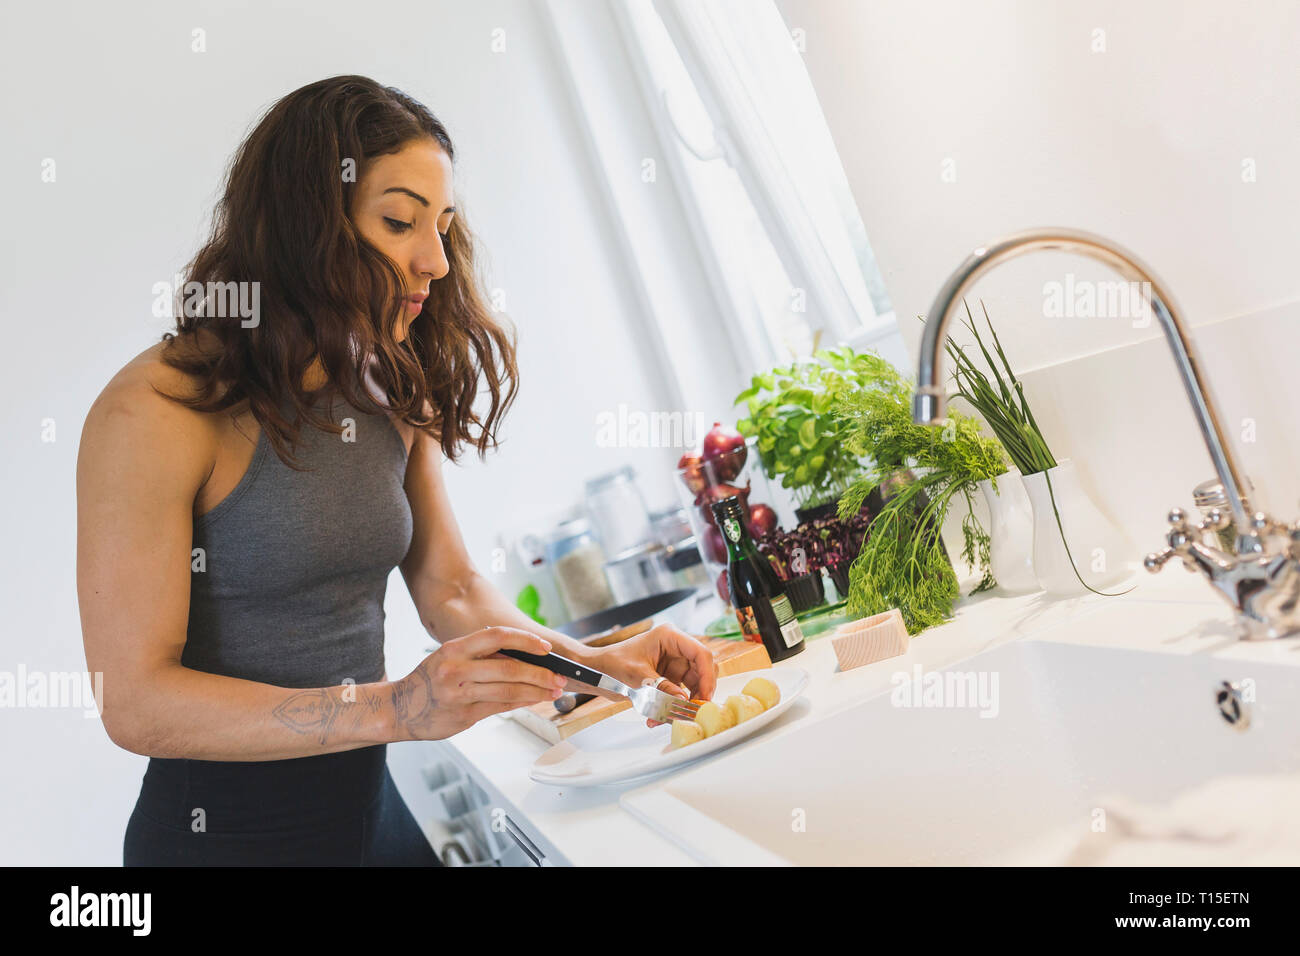 La donna la preparazione di un alimento sano in cucina Foto Stock